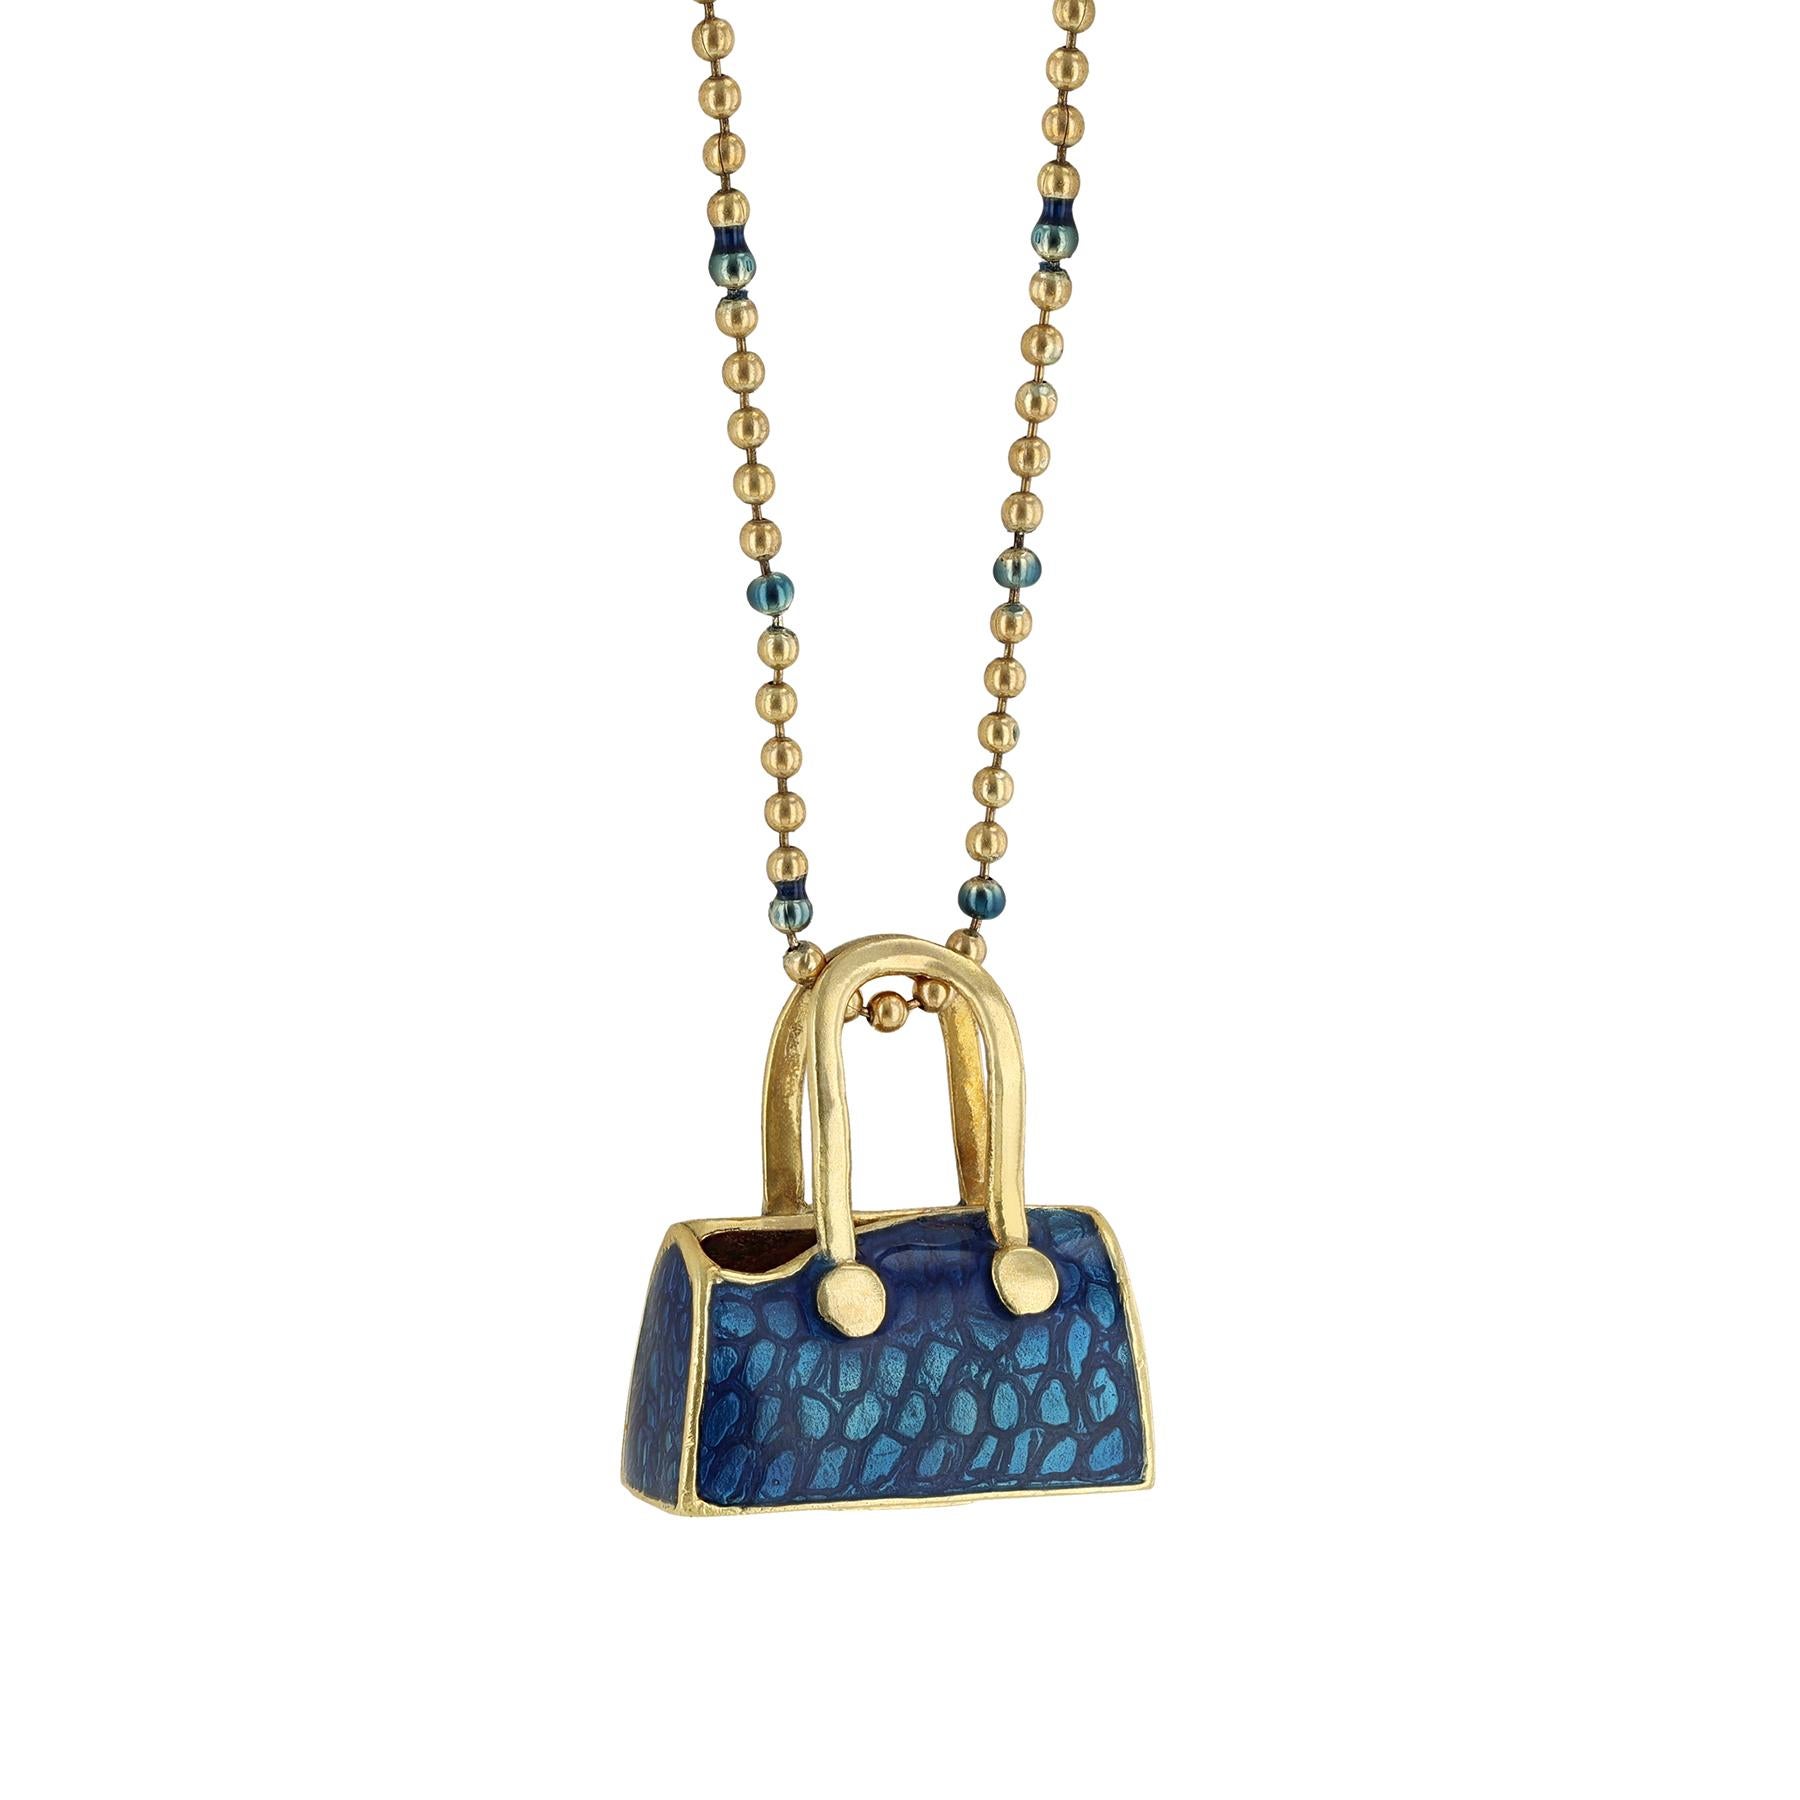 Ce collier est réalisé en or jaune 18K et en émail bleu. Il comporte un pendentif en forme de sac à main.